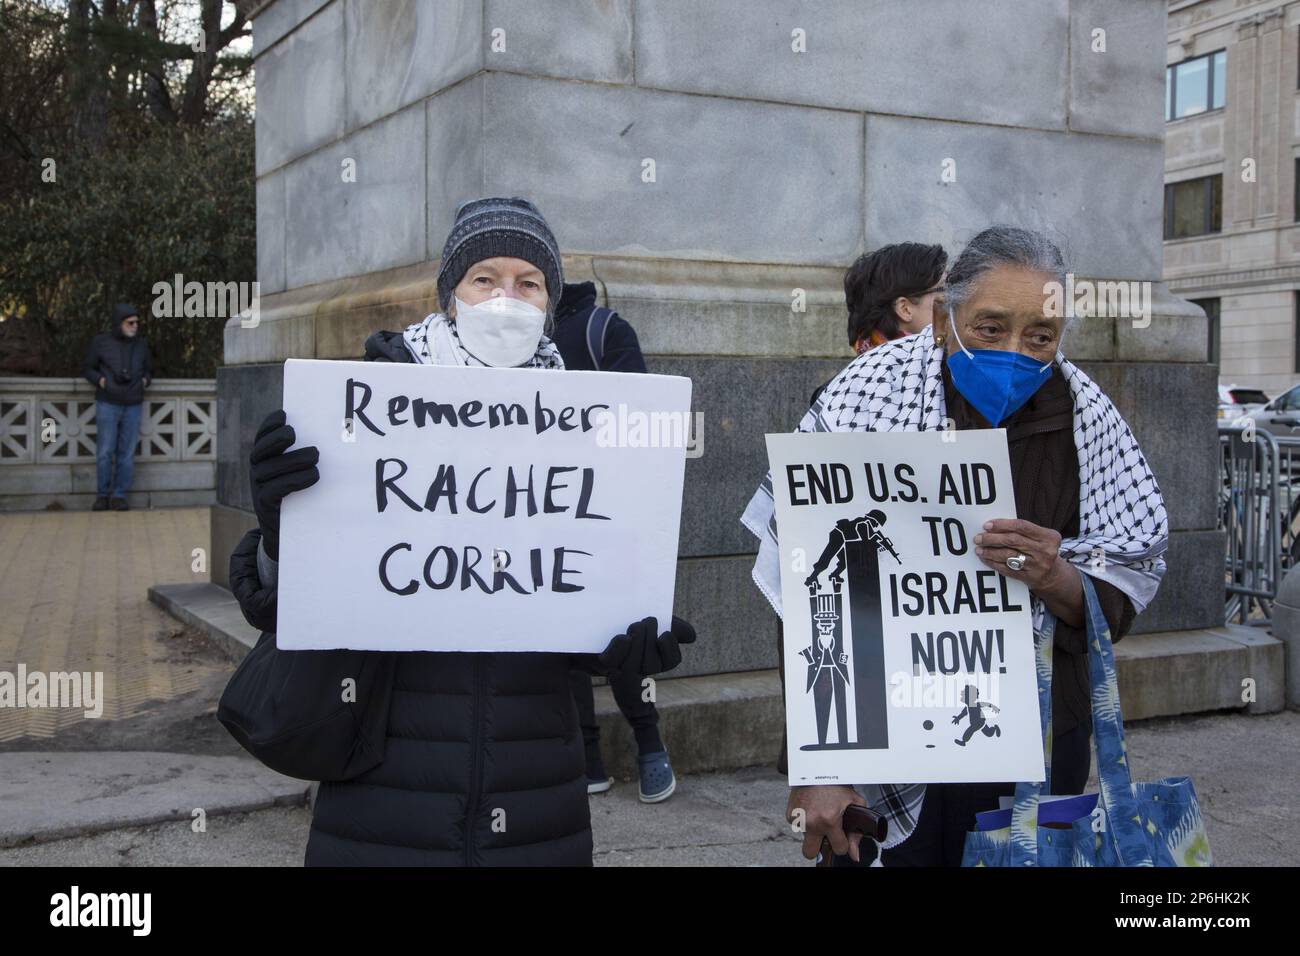 Juden und andere versammeln sich und marschieren in Brooklyn in der Nähe von Senator Chuck Schumers Haus und fordern von den USA, die Militärfinanzierung für Israel zu kürzen, angesichts von Anschlägen und der Tötung palästinensischer Zivilisten sowie der Zerstörung von Häusern und palästinensischem Eigentum im Westjordanland und anderswo. (Rachel Corrie ist Mitglied der pro-palästinensischen Gruppe Internationale Solidaritätsbewegung (ISM),[3] Sie wurde unter umstrittenen Umständen auf dem Höhepunkt der zweiten Intifada von einem gepanzerten Bulldozer der israelischen Verteidigungskräfte in einer Kampfzone im südlichen Gazastreifen zu Tode gequetscht) Stockfoto